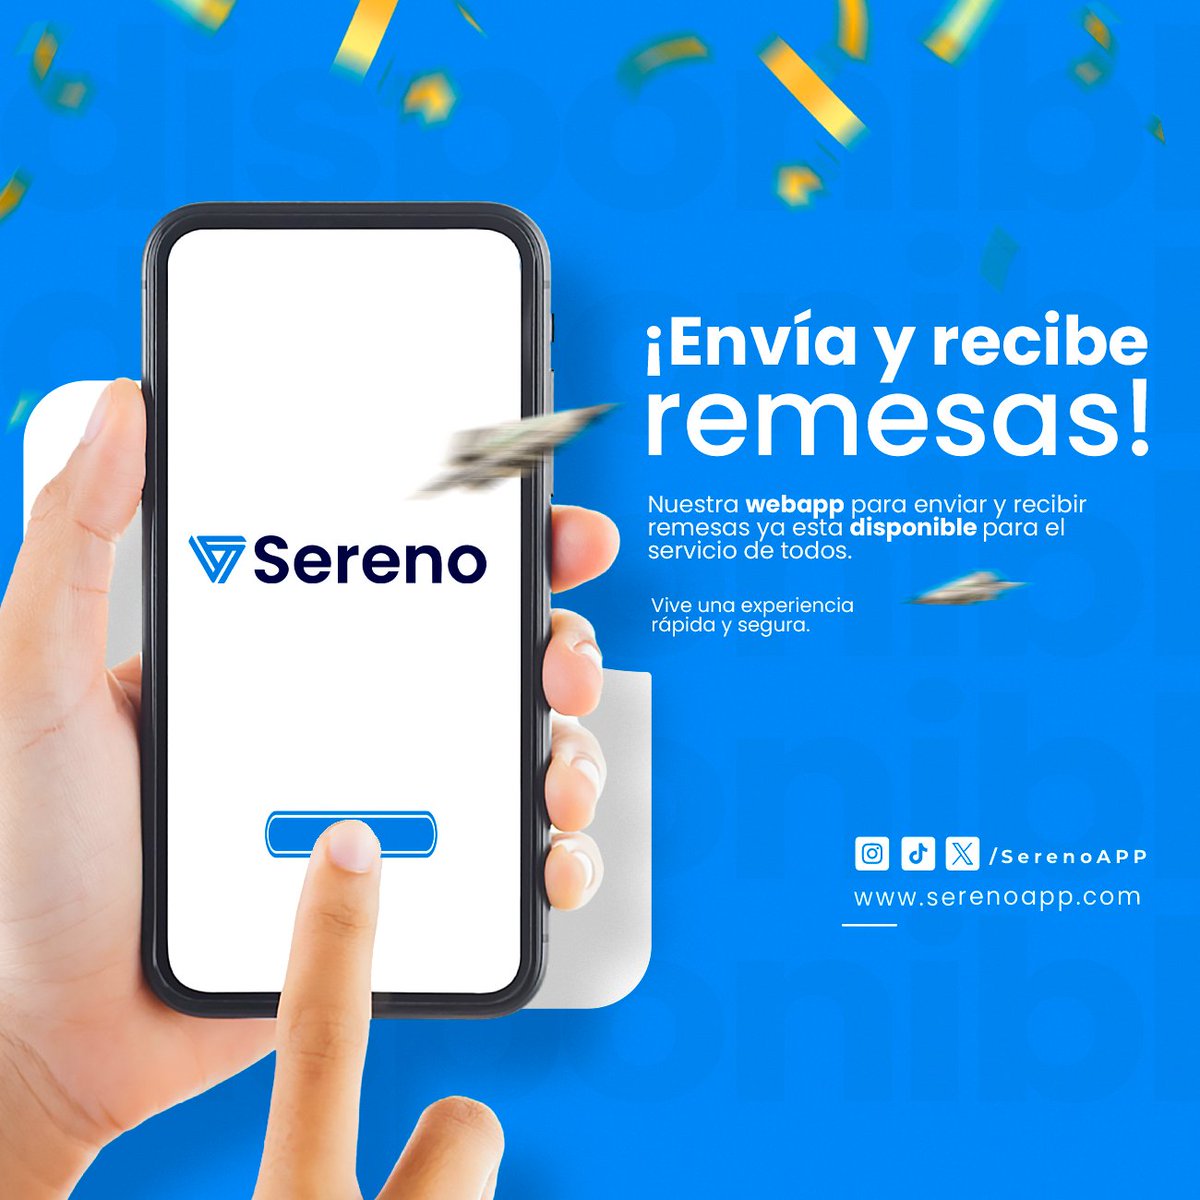 ¡YA ESTAMOS DISPONIBLES! Nuestra WebApp está habilitada para el servicio de todos. Envía y recibe remesas de manera fácil y rápida 🚀

#remesas #remesasvenezuela #remesasavenezuela  #serenoapp #venezuela